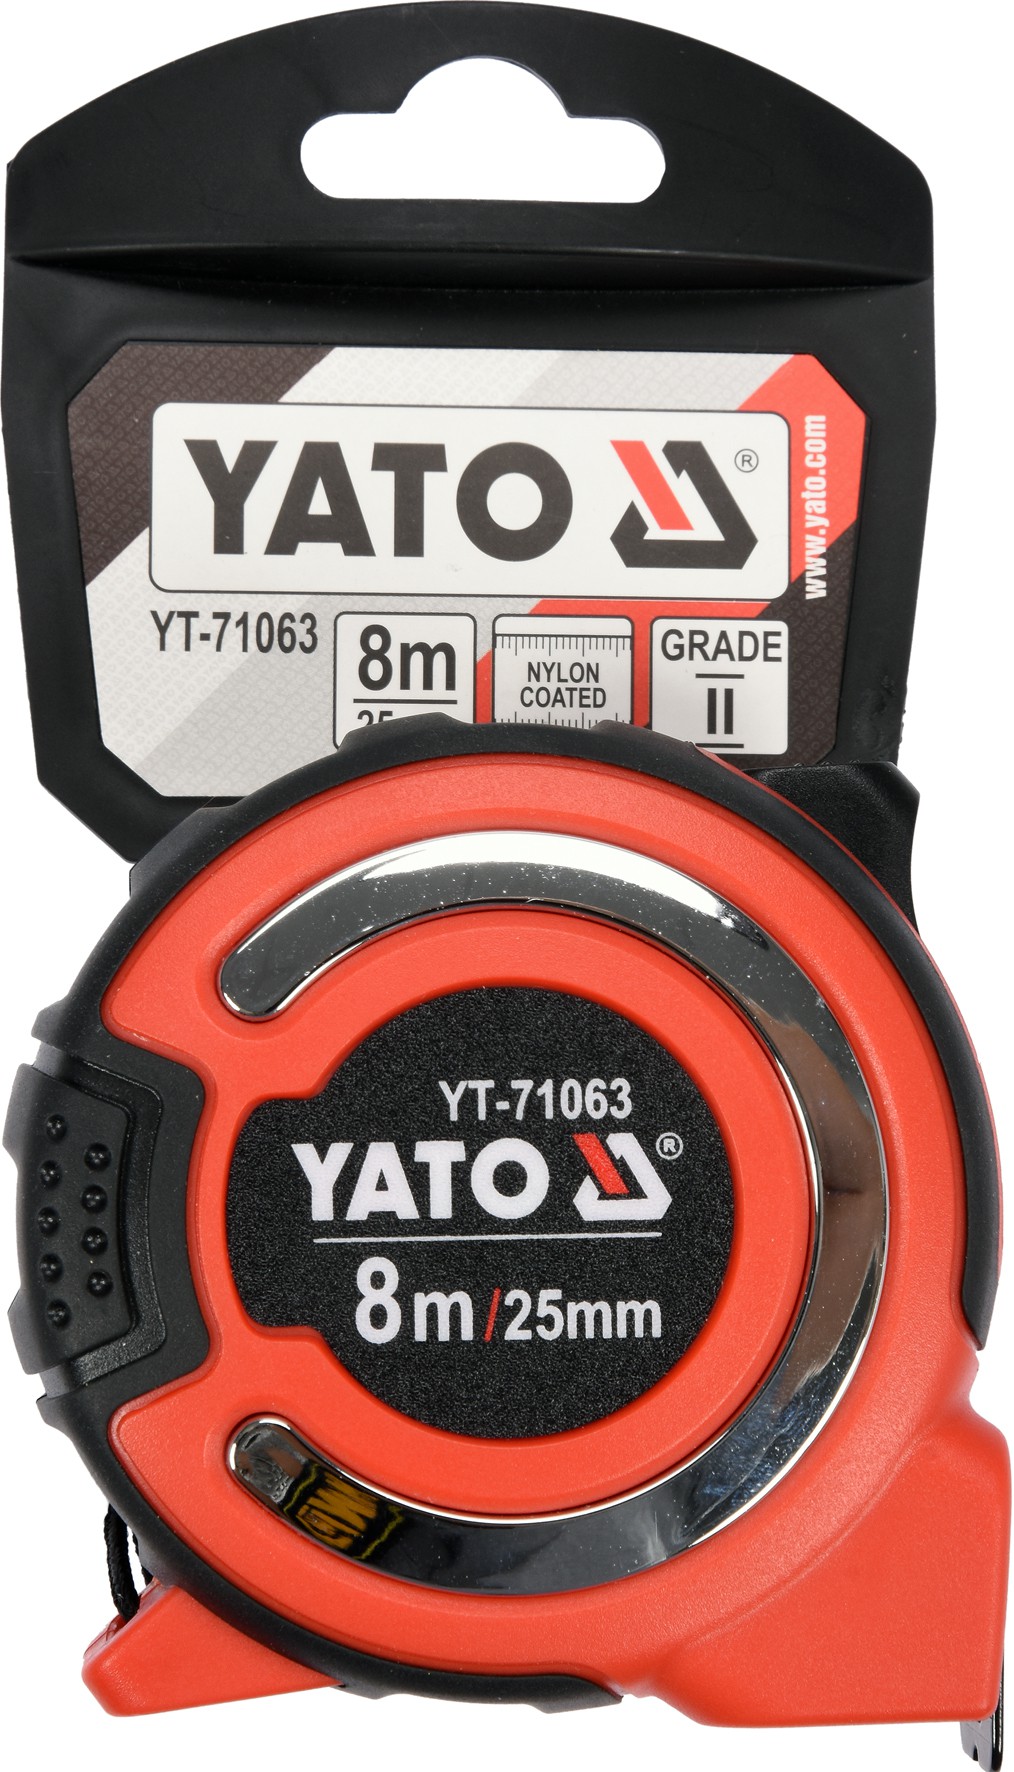 Рулетка Yato с нейлоновым. покрытием 8м / 25мм